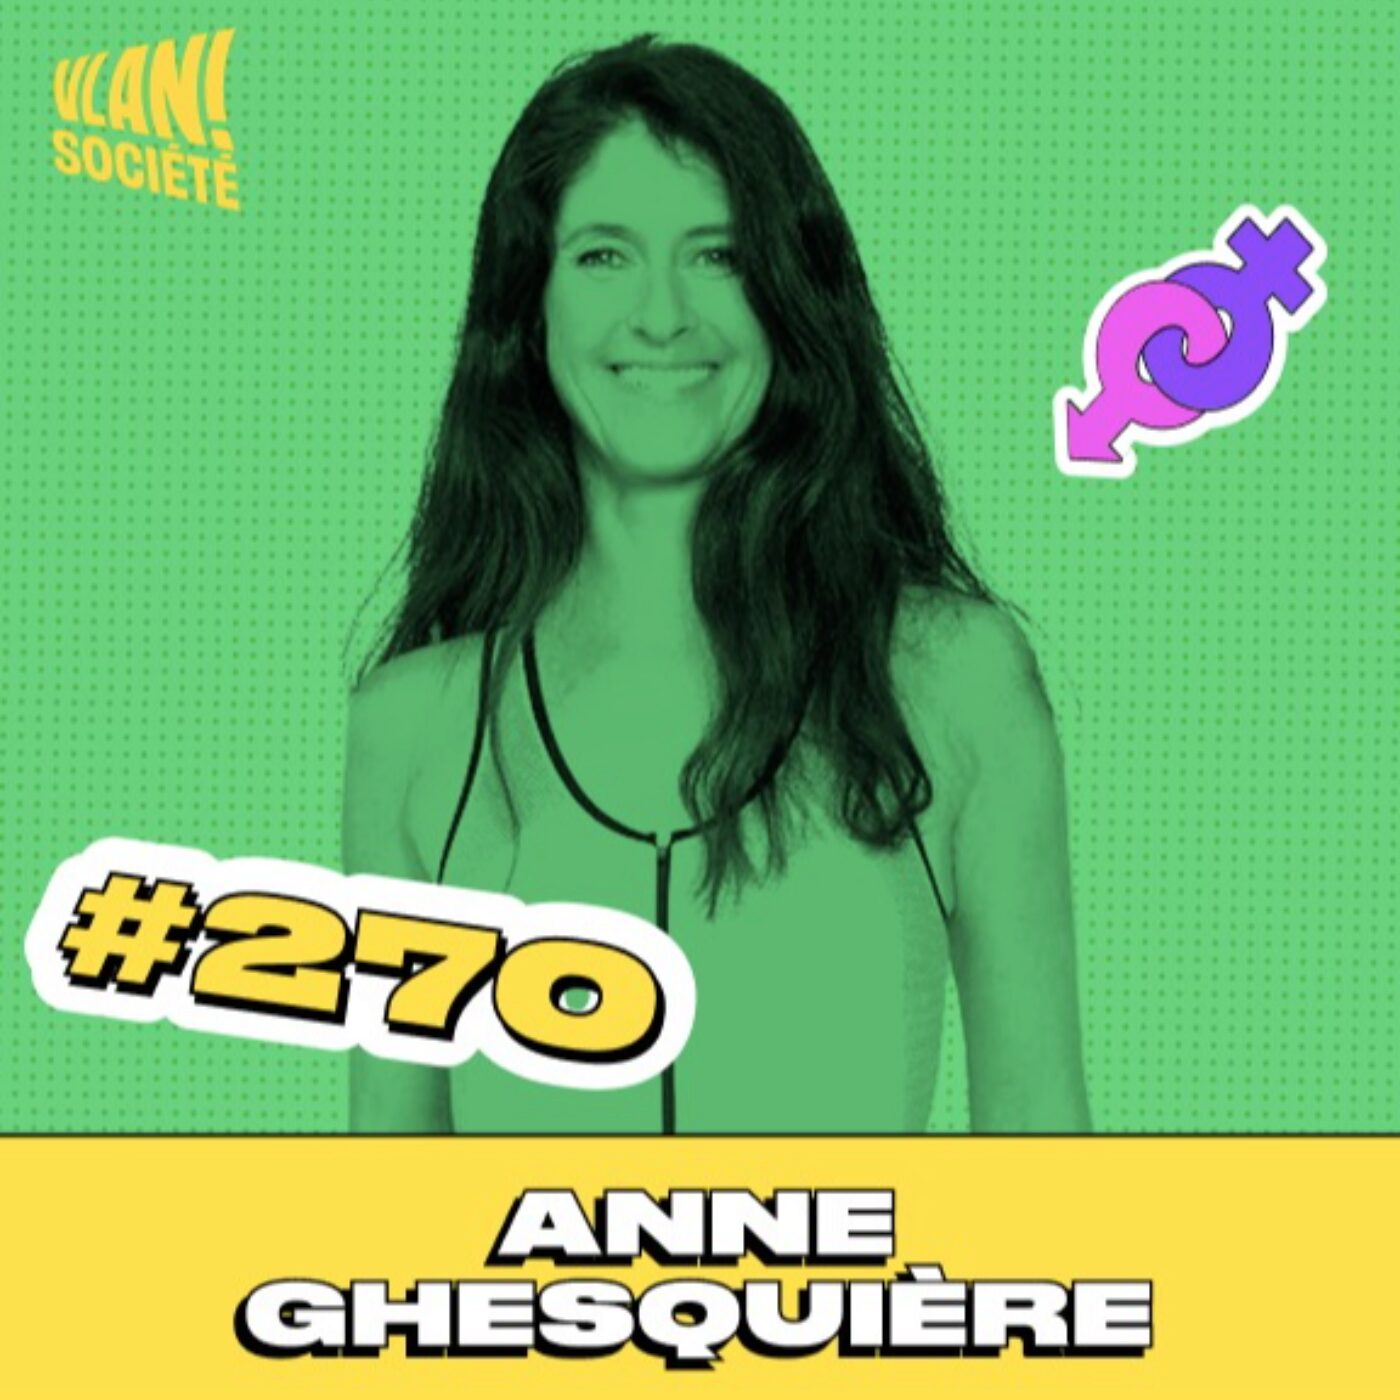 Anne Ghesquière